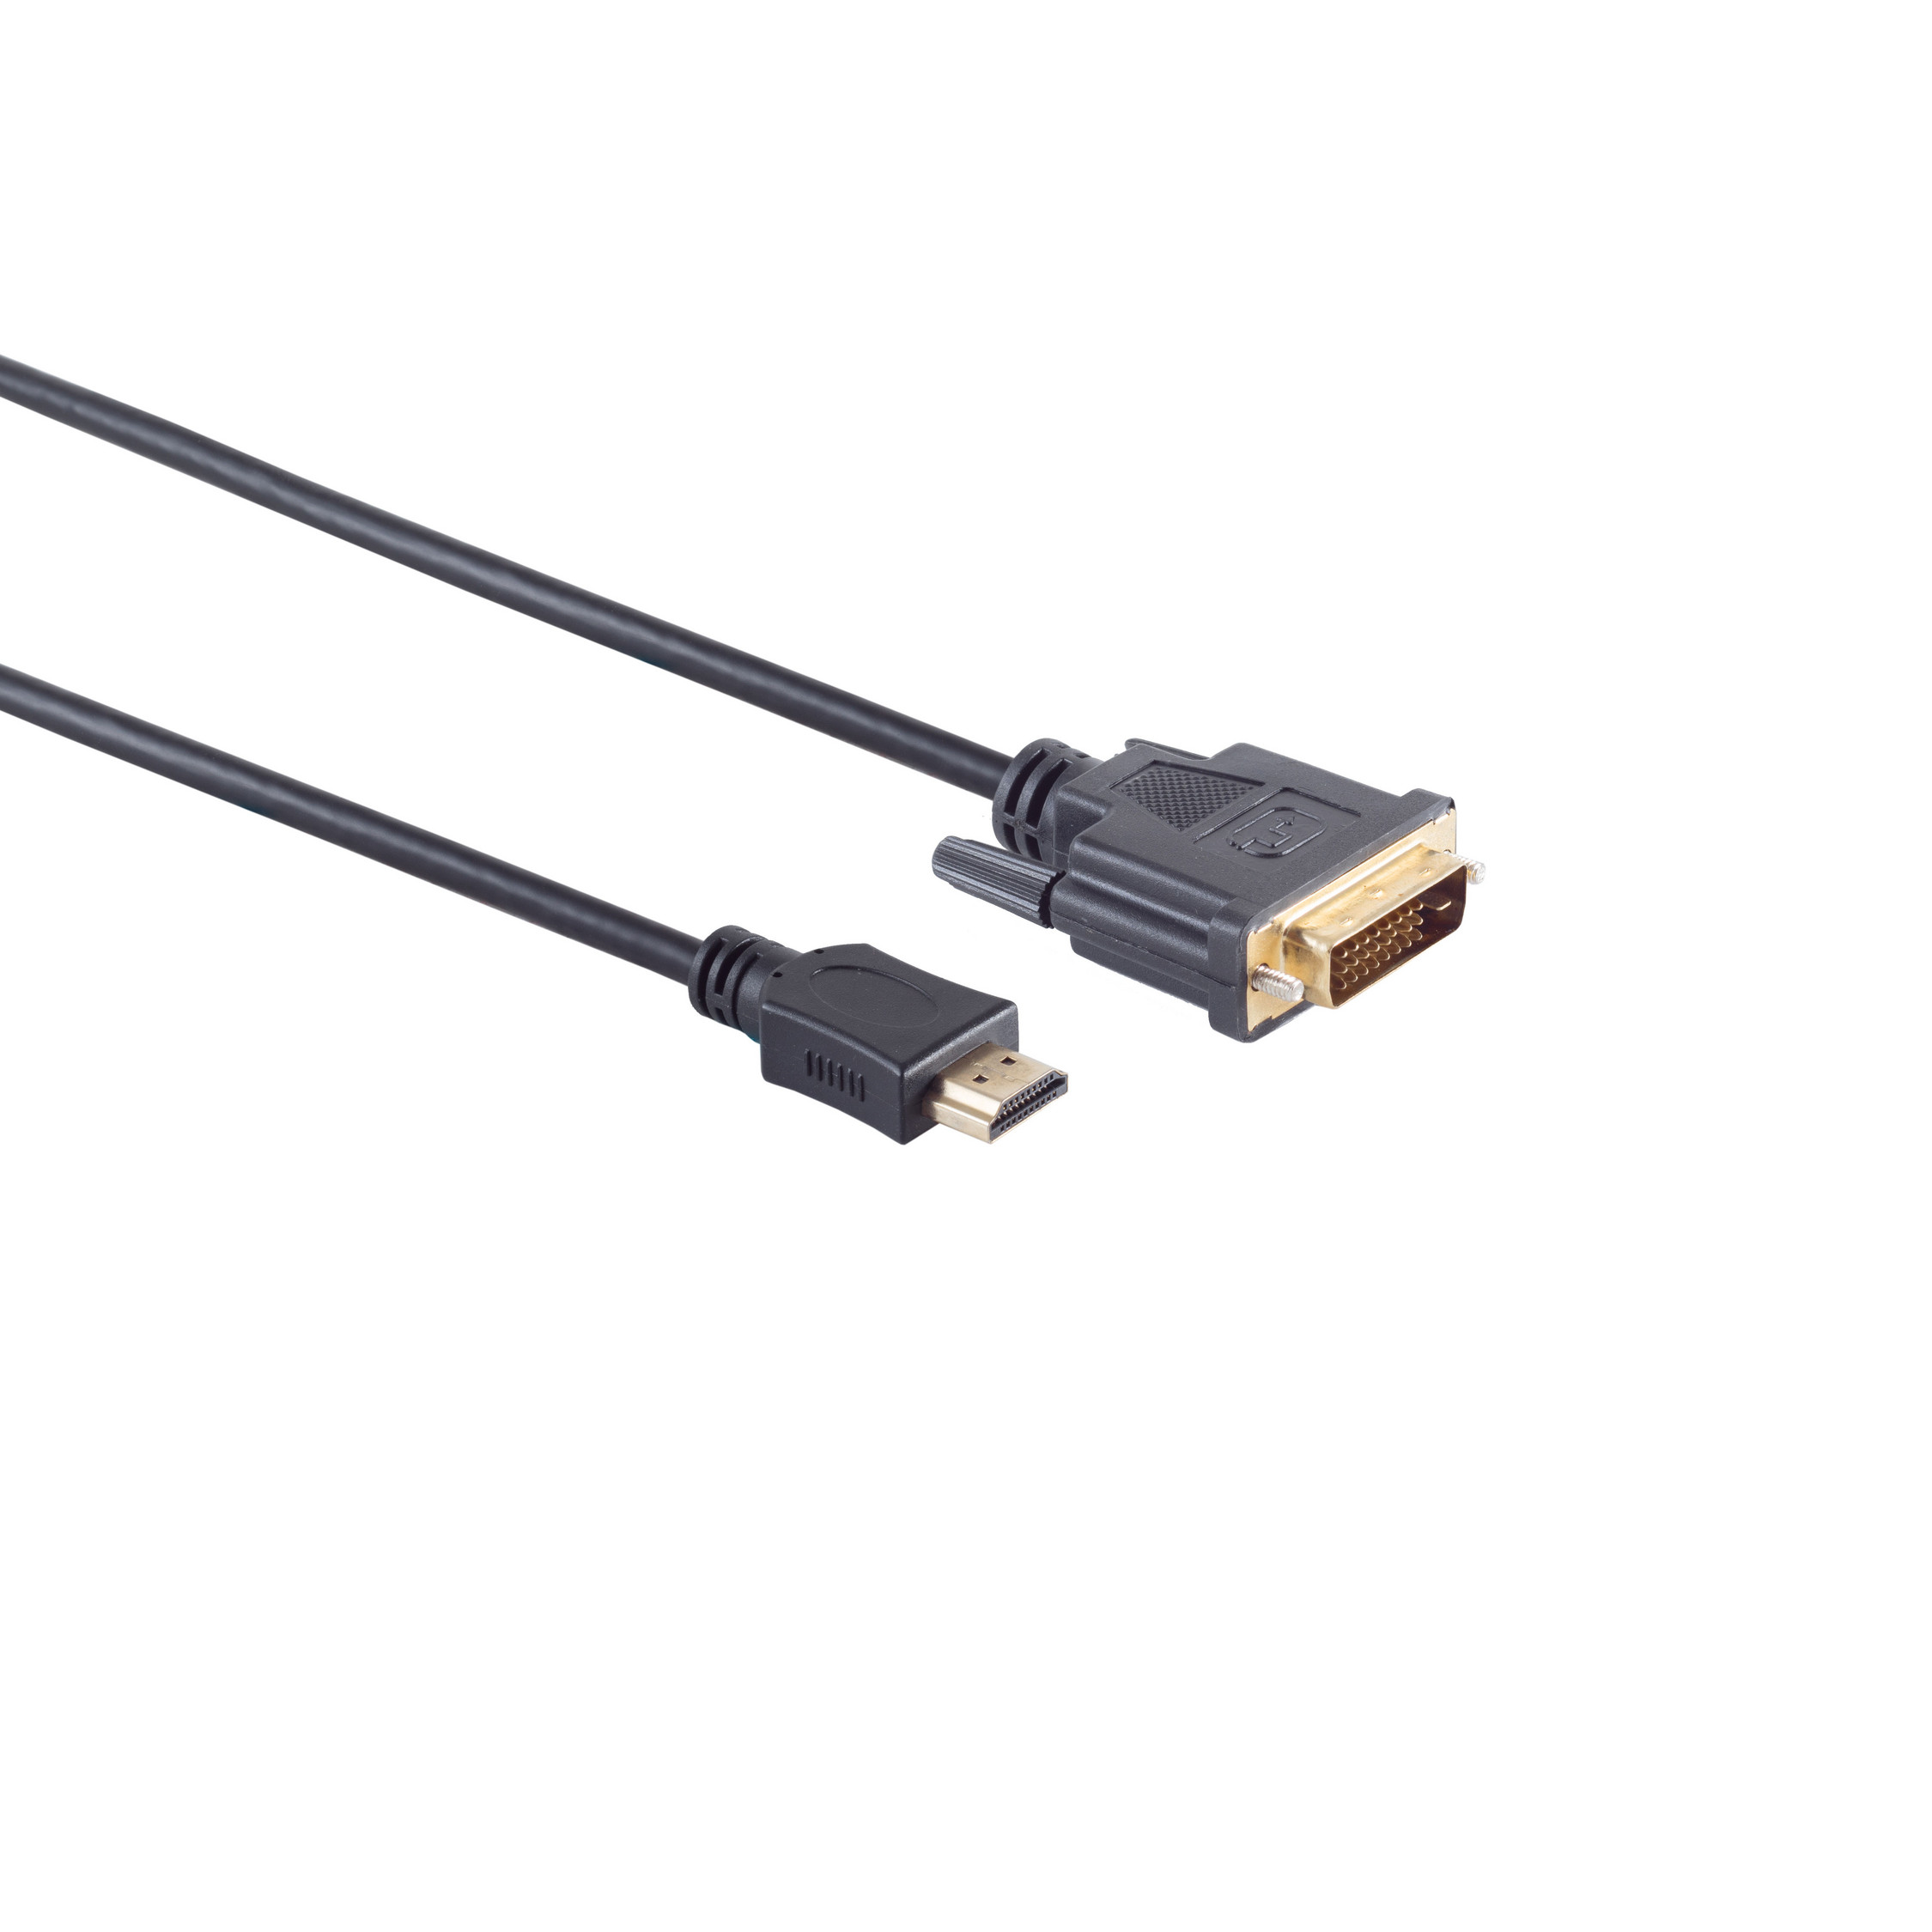 KABELBUDE HDMI Stecker / 2m HDMI (24+1) DVI-D verg. Kabel Stecker